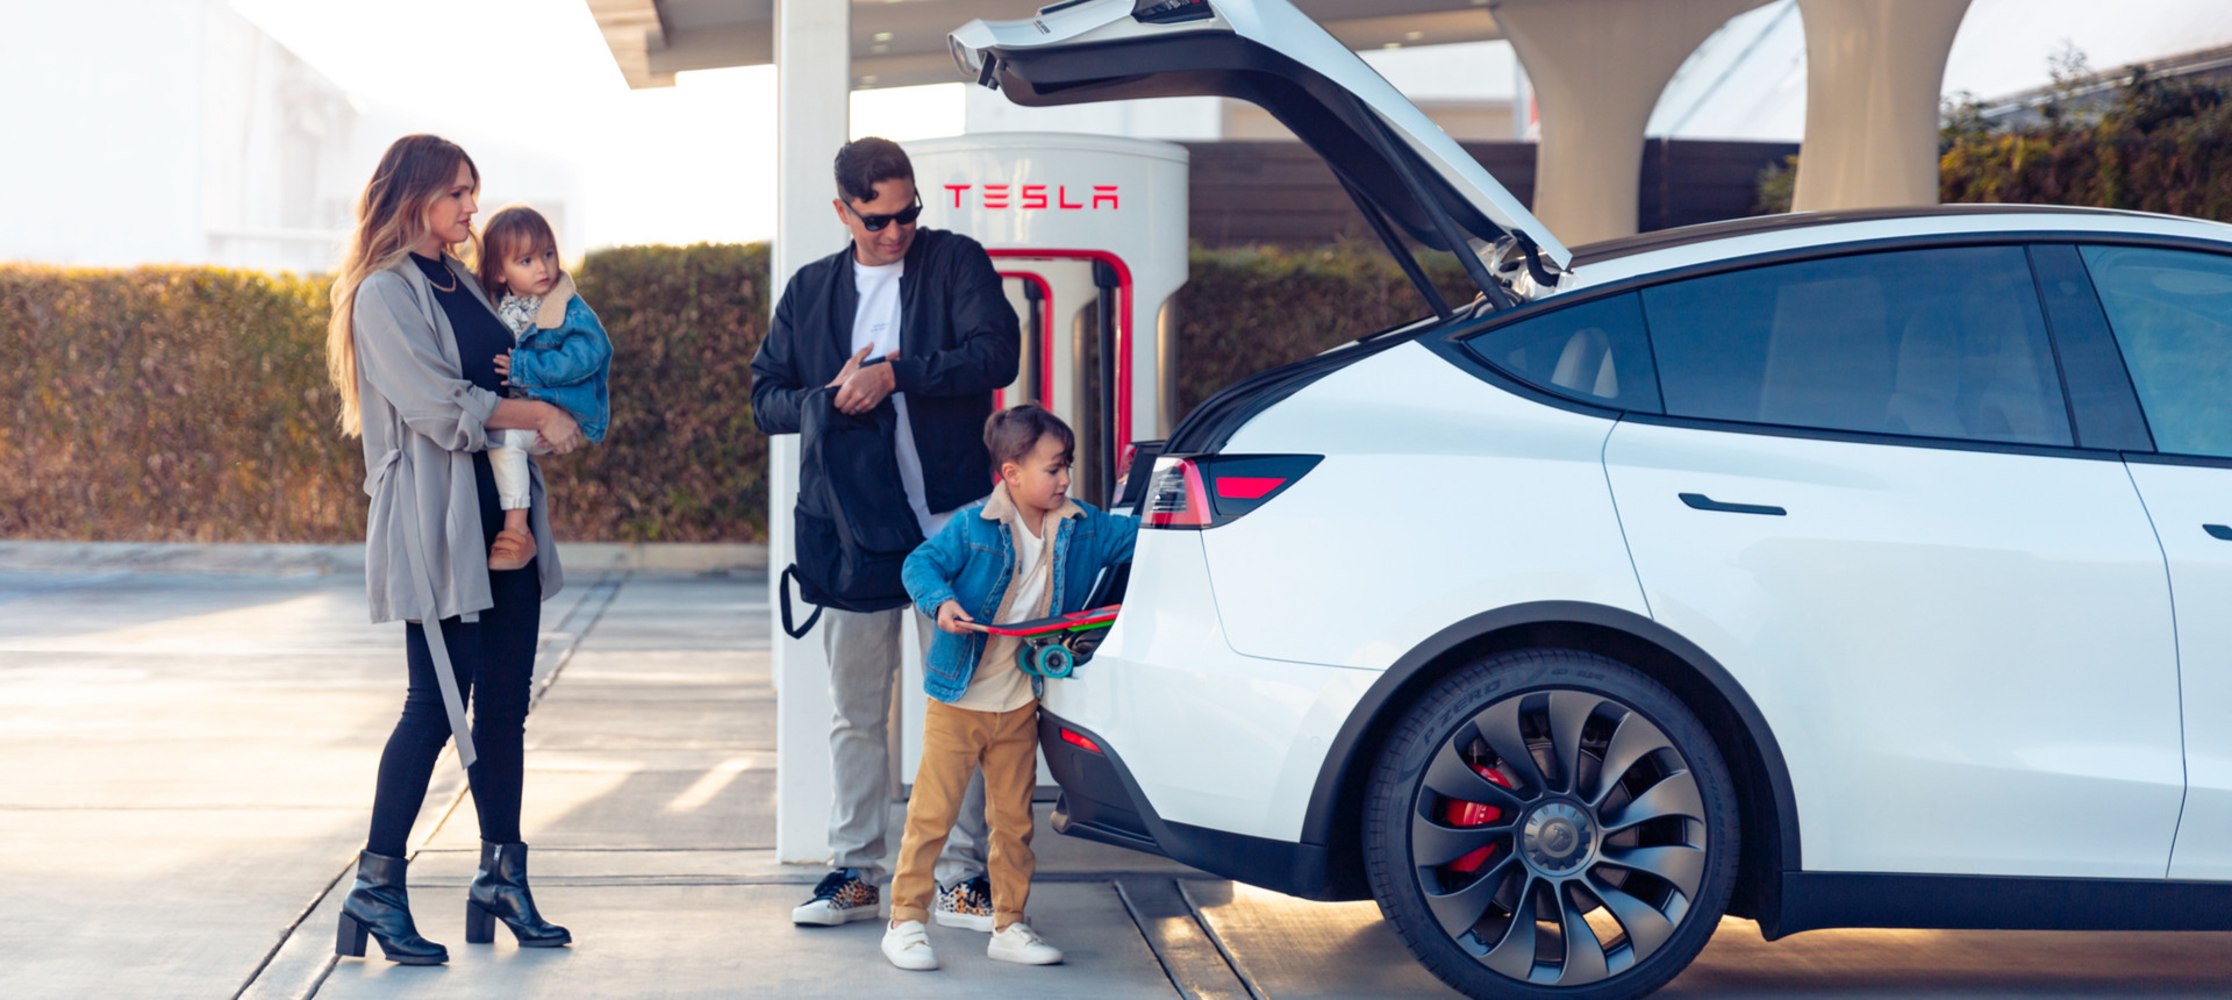 Perhe lataa yhdessä Tesla-autoa. 